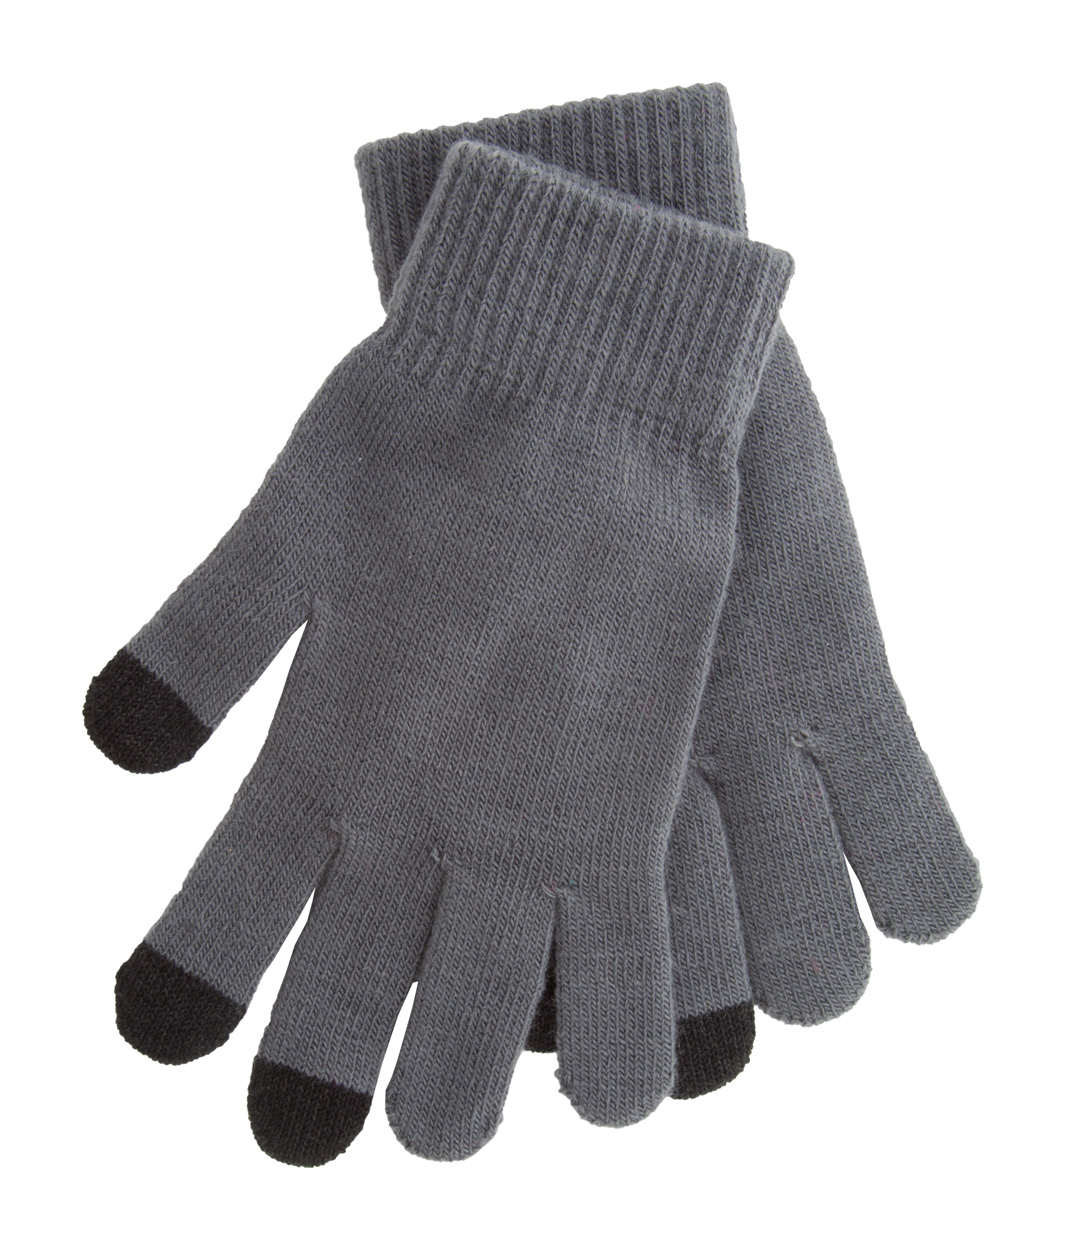 Zimní rukavice ACTIUM pro ovládání dotykových displejů